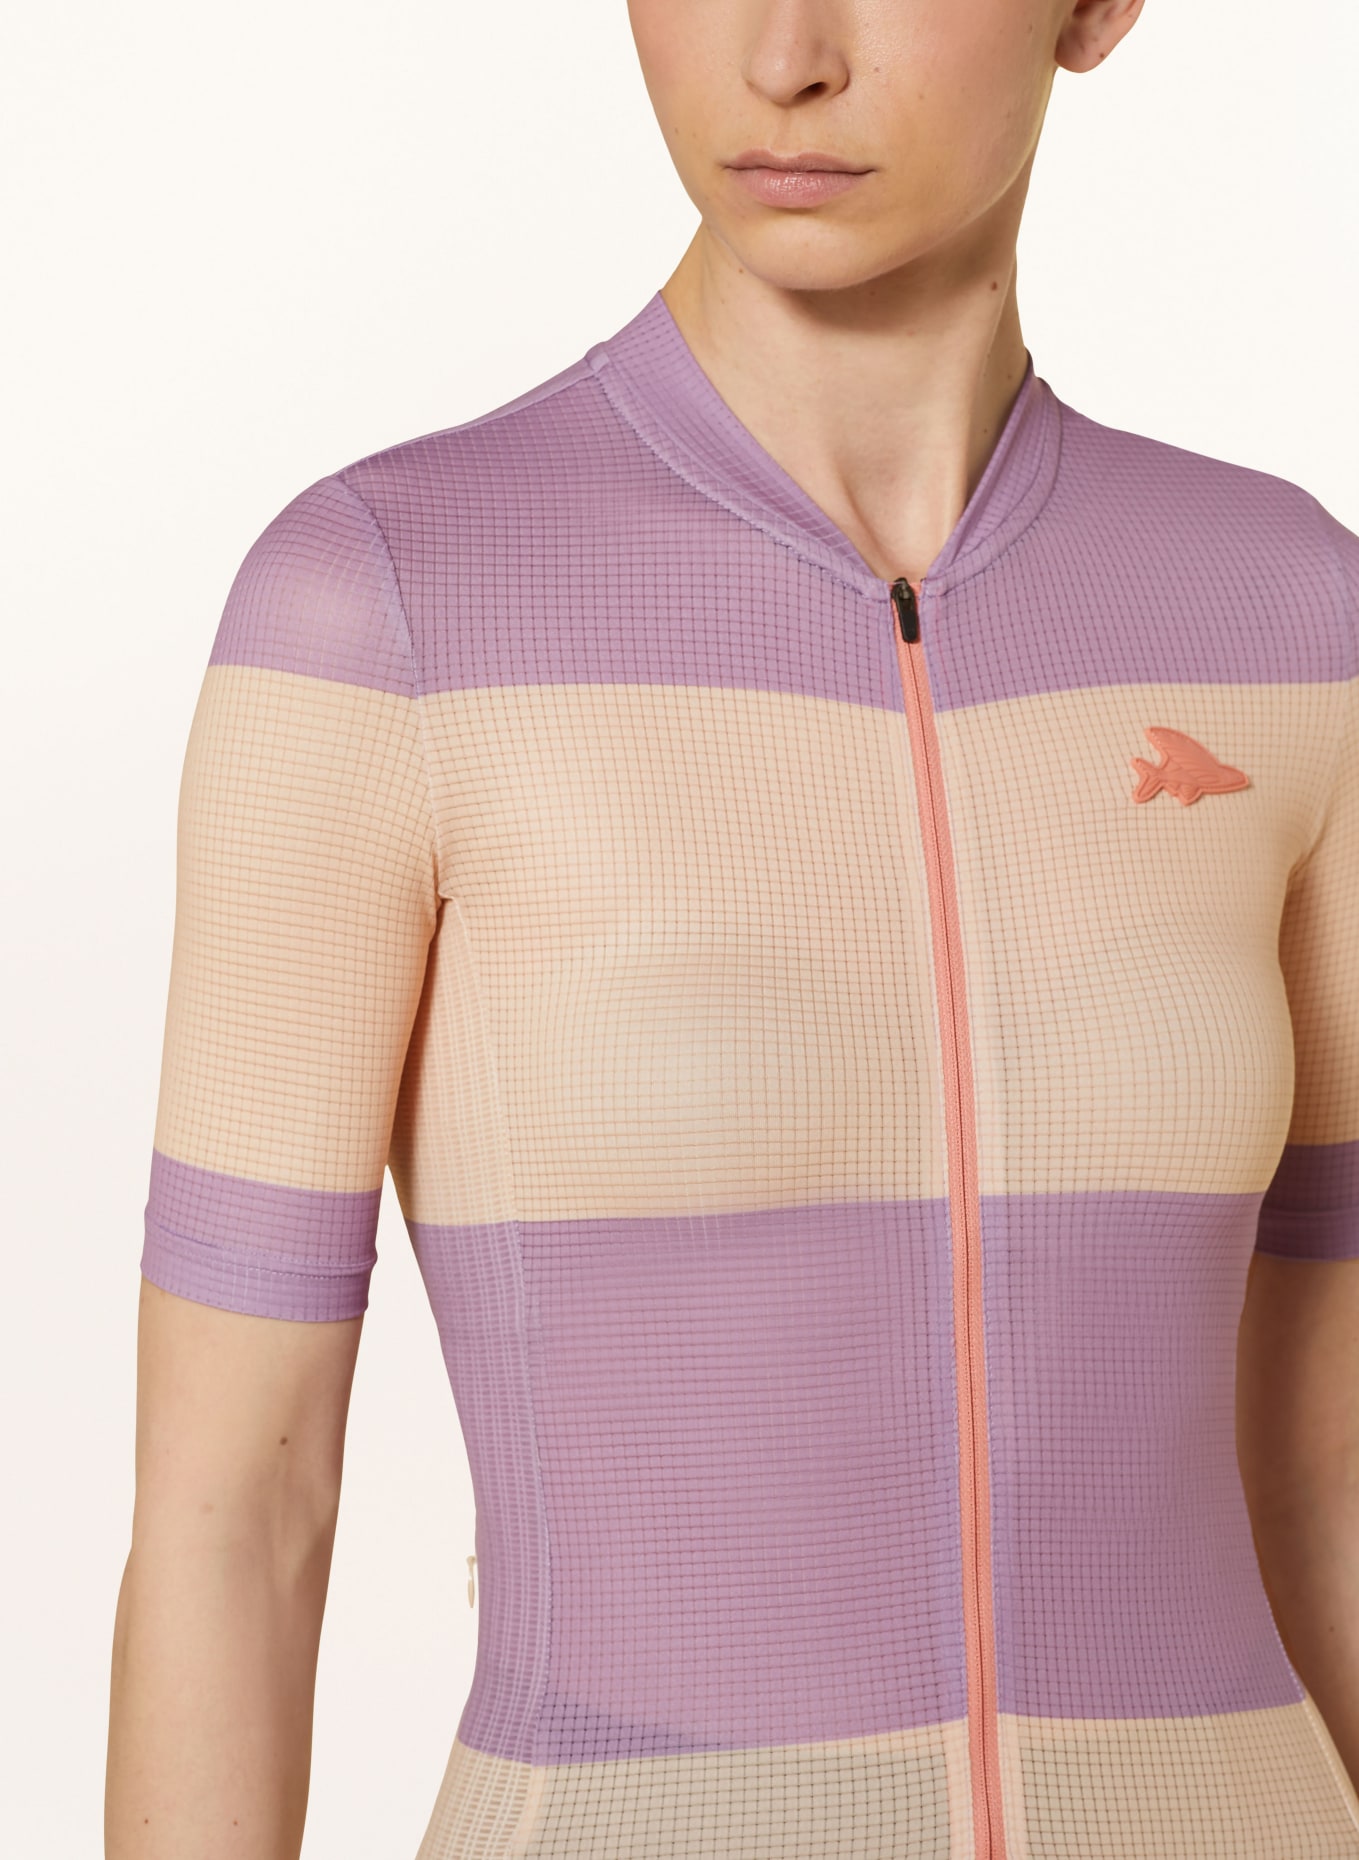 CAFÉ DU CYCLISTE Cycling jacket ANGELINE, Color: PURPLE/ LIGHT ORANGE (Image 5)